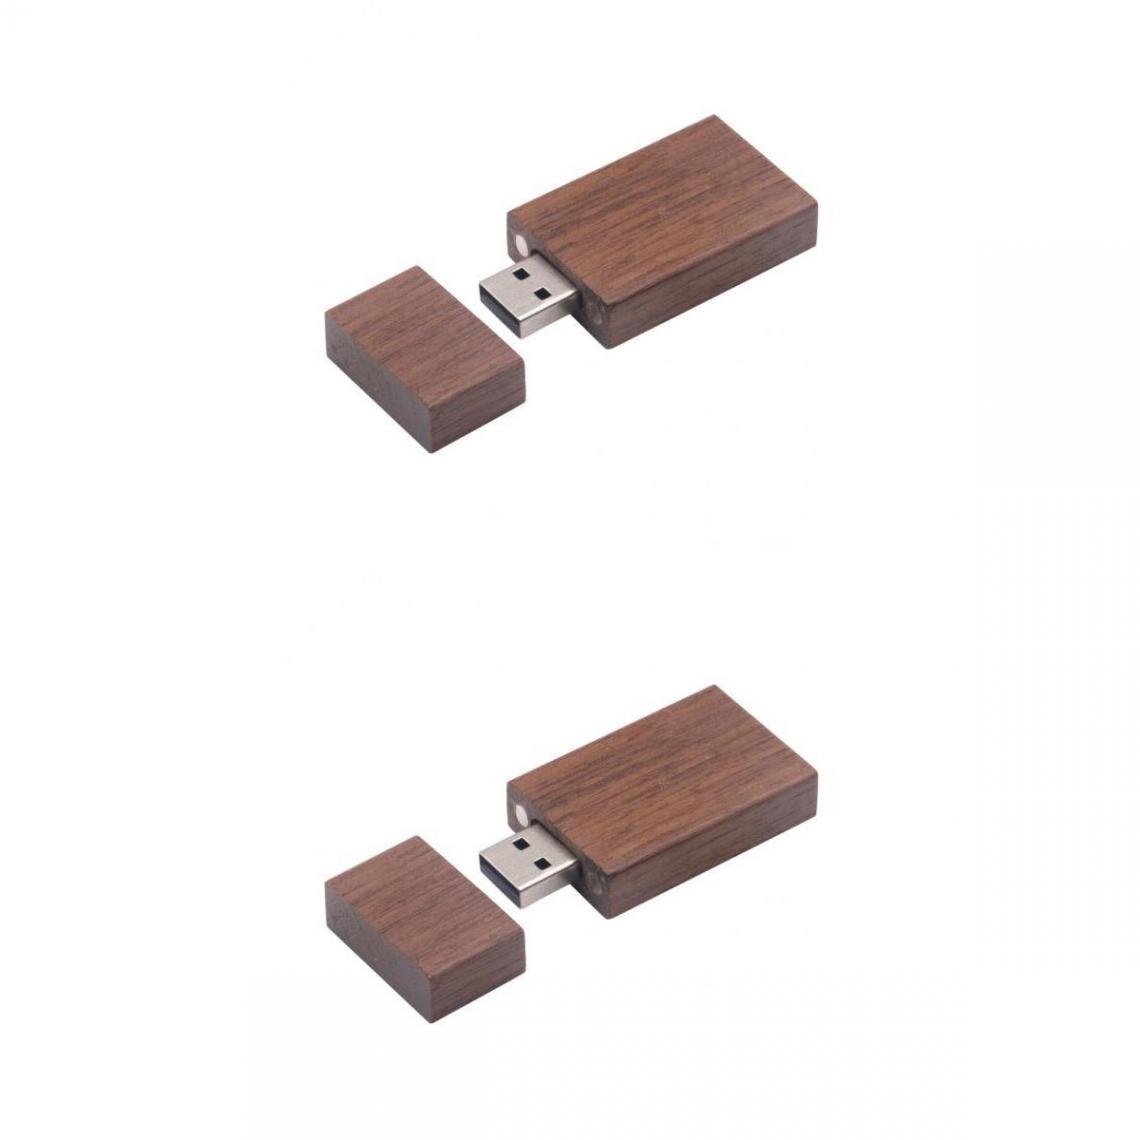 marque generique - Usb En Bois 2.0 memory stick lecteur flash u disque w / boîte en bois pour pc 8g + 4g - Clés USB